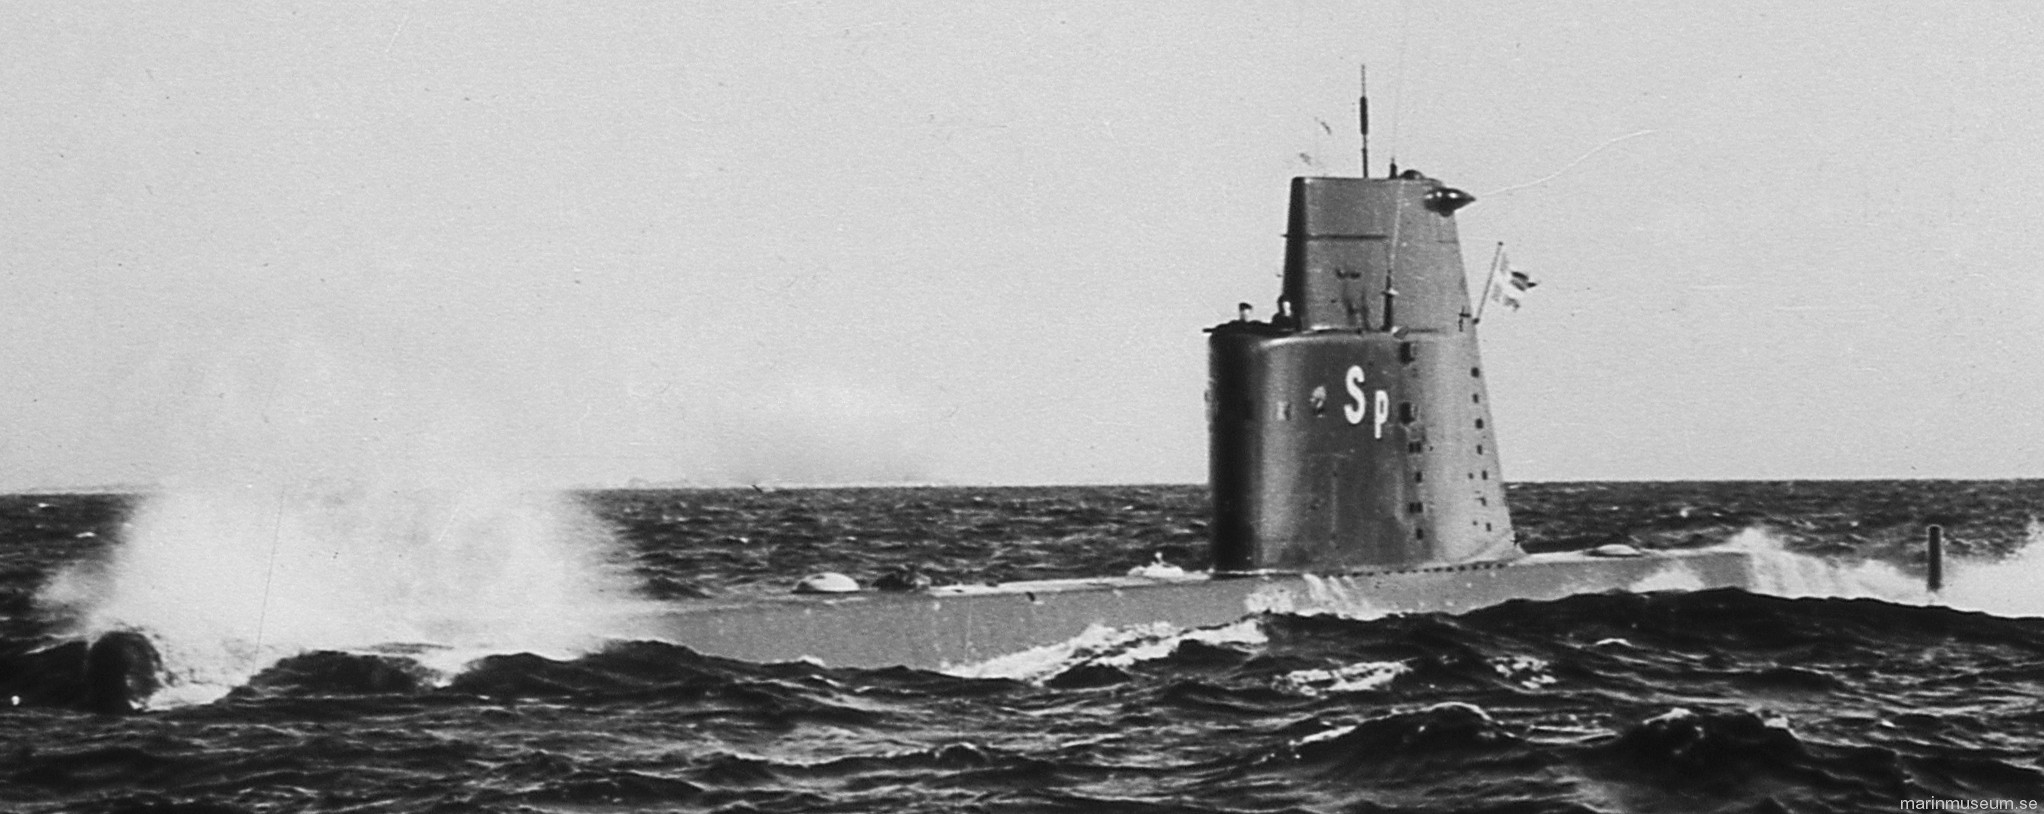 hms hswms springaren draken a12 class attack submarine ubåt swedish navy svenska marinen försvarsmakten 03